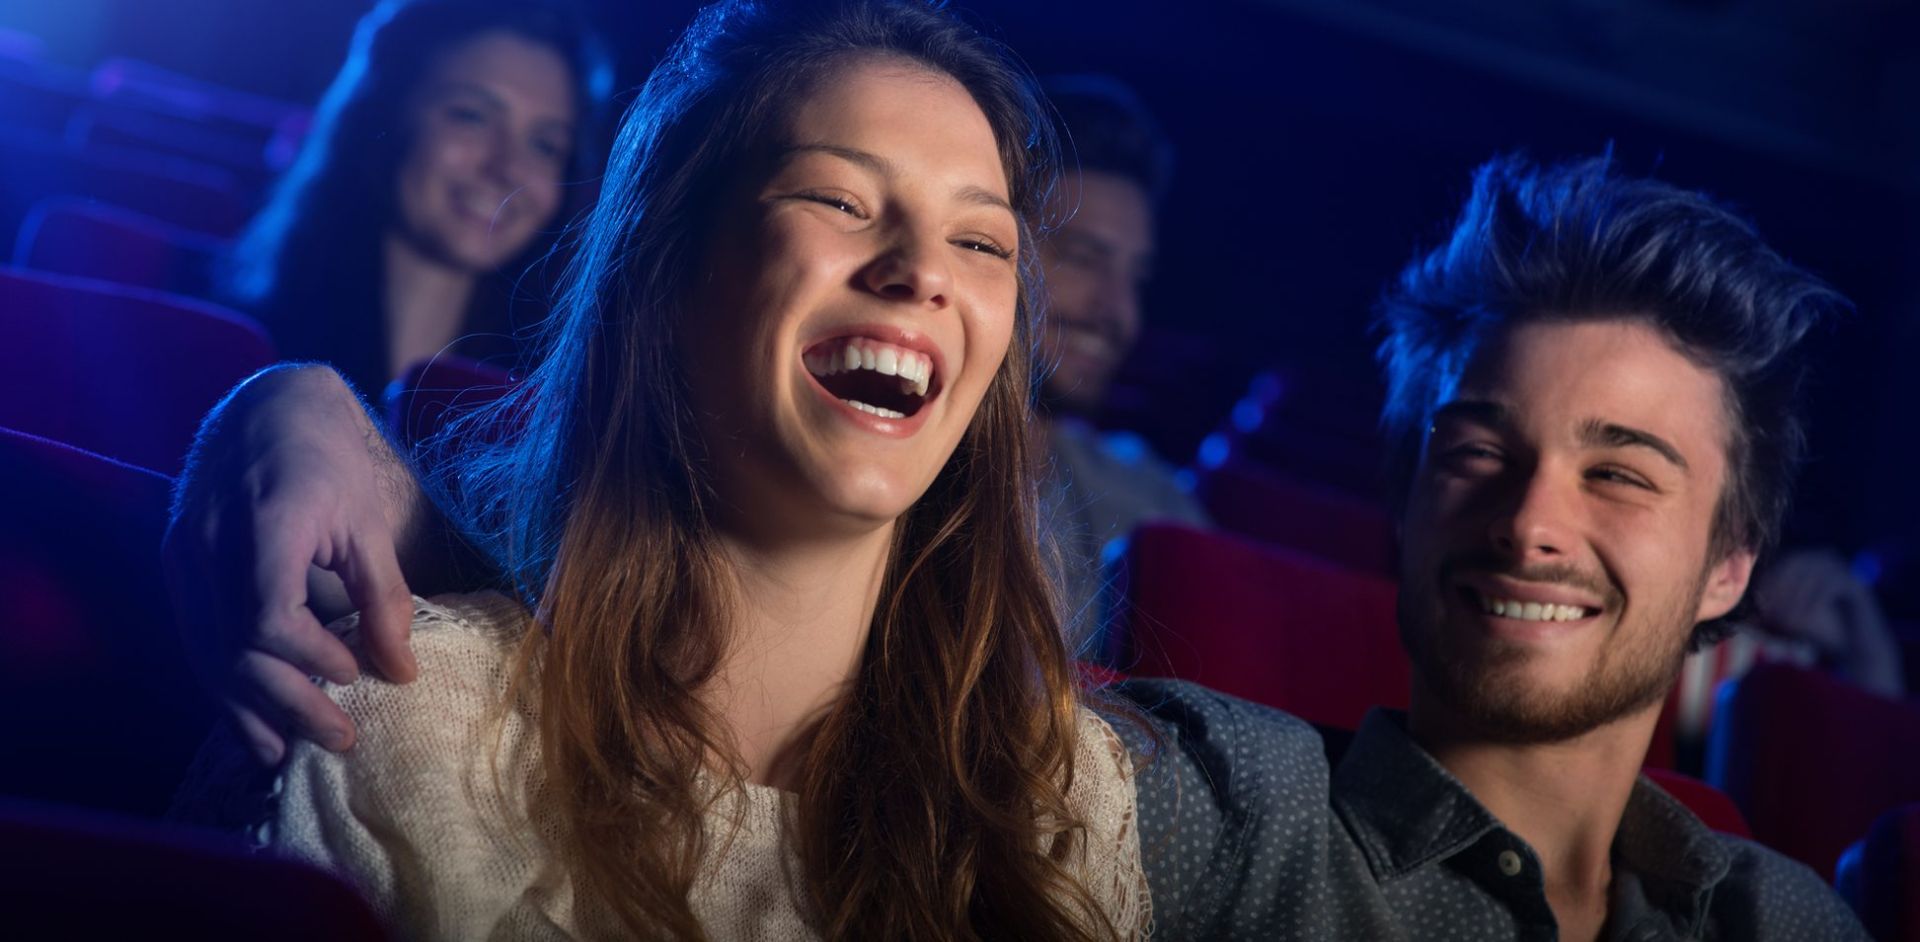 ζευγάρι γελά σε αίθουσα κινηματογράφου